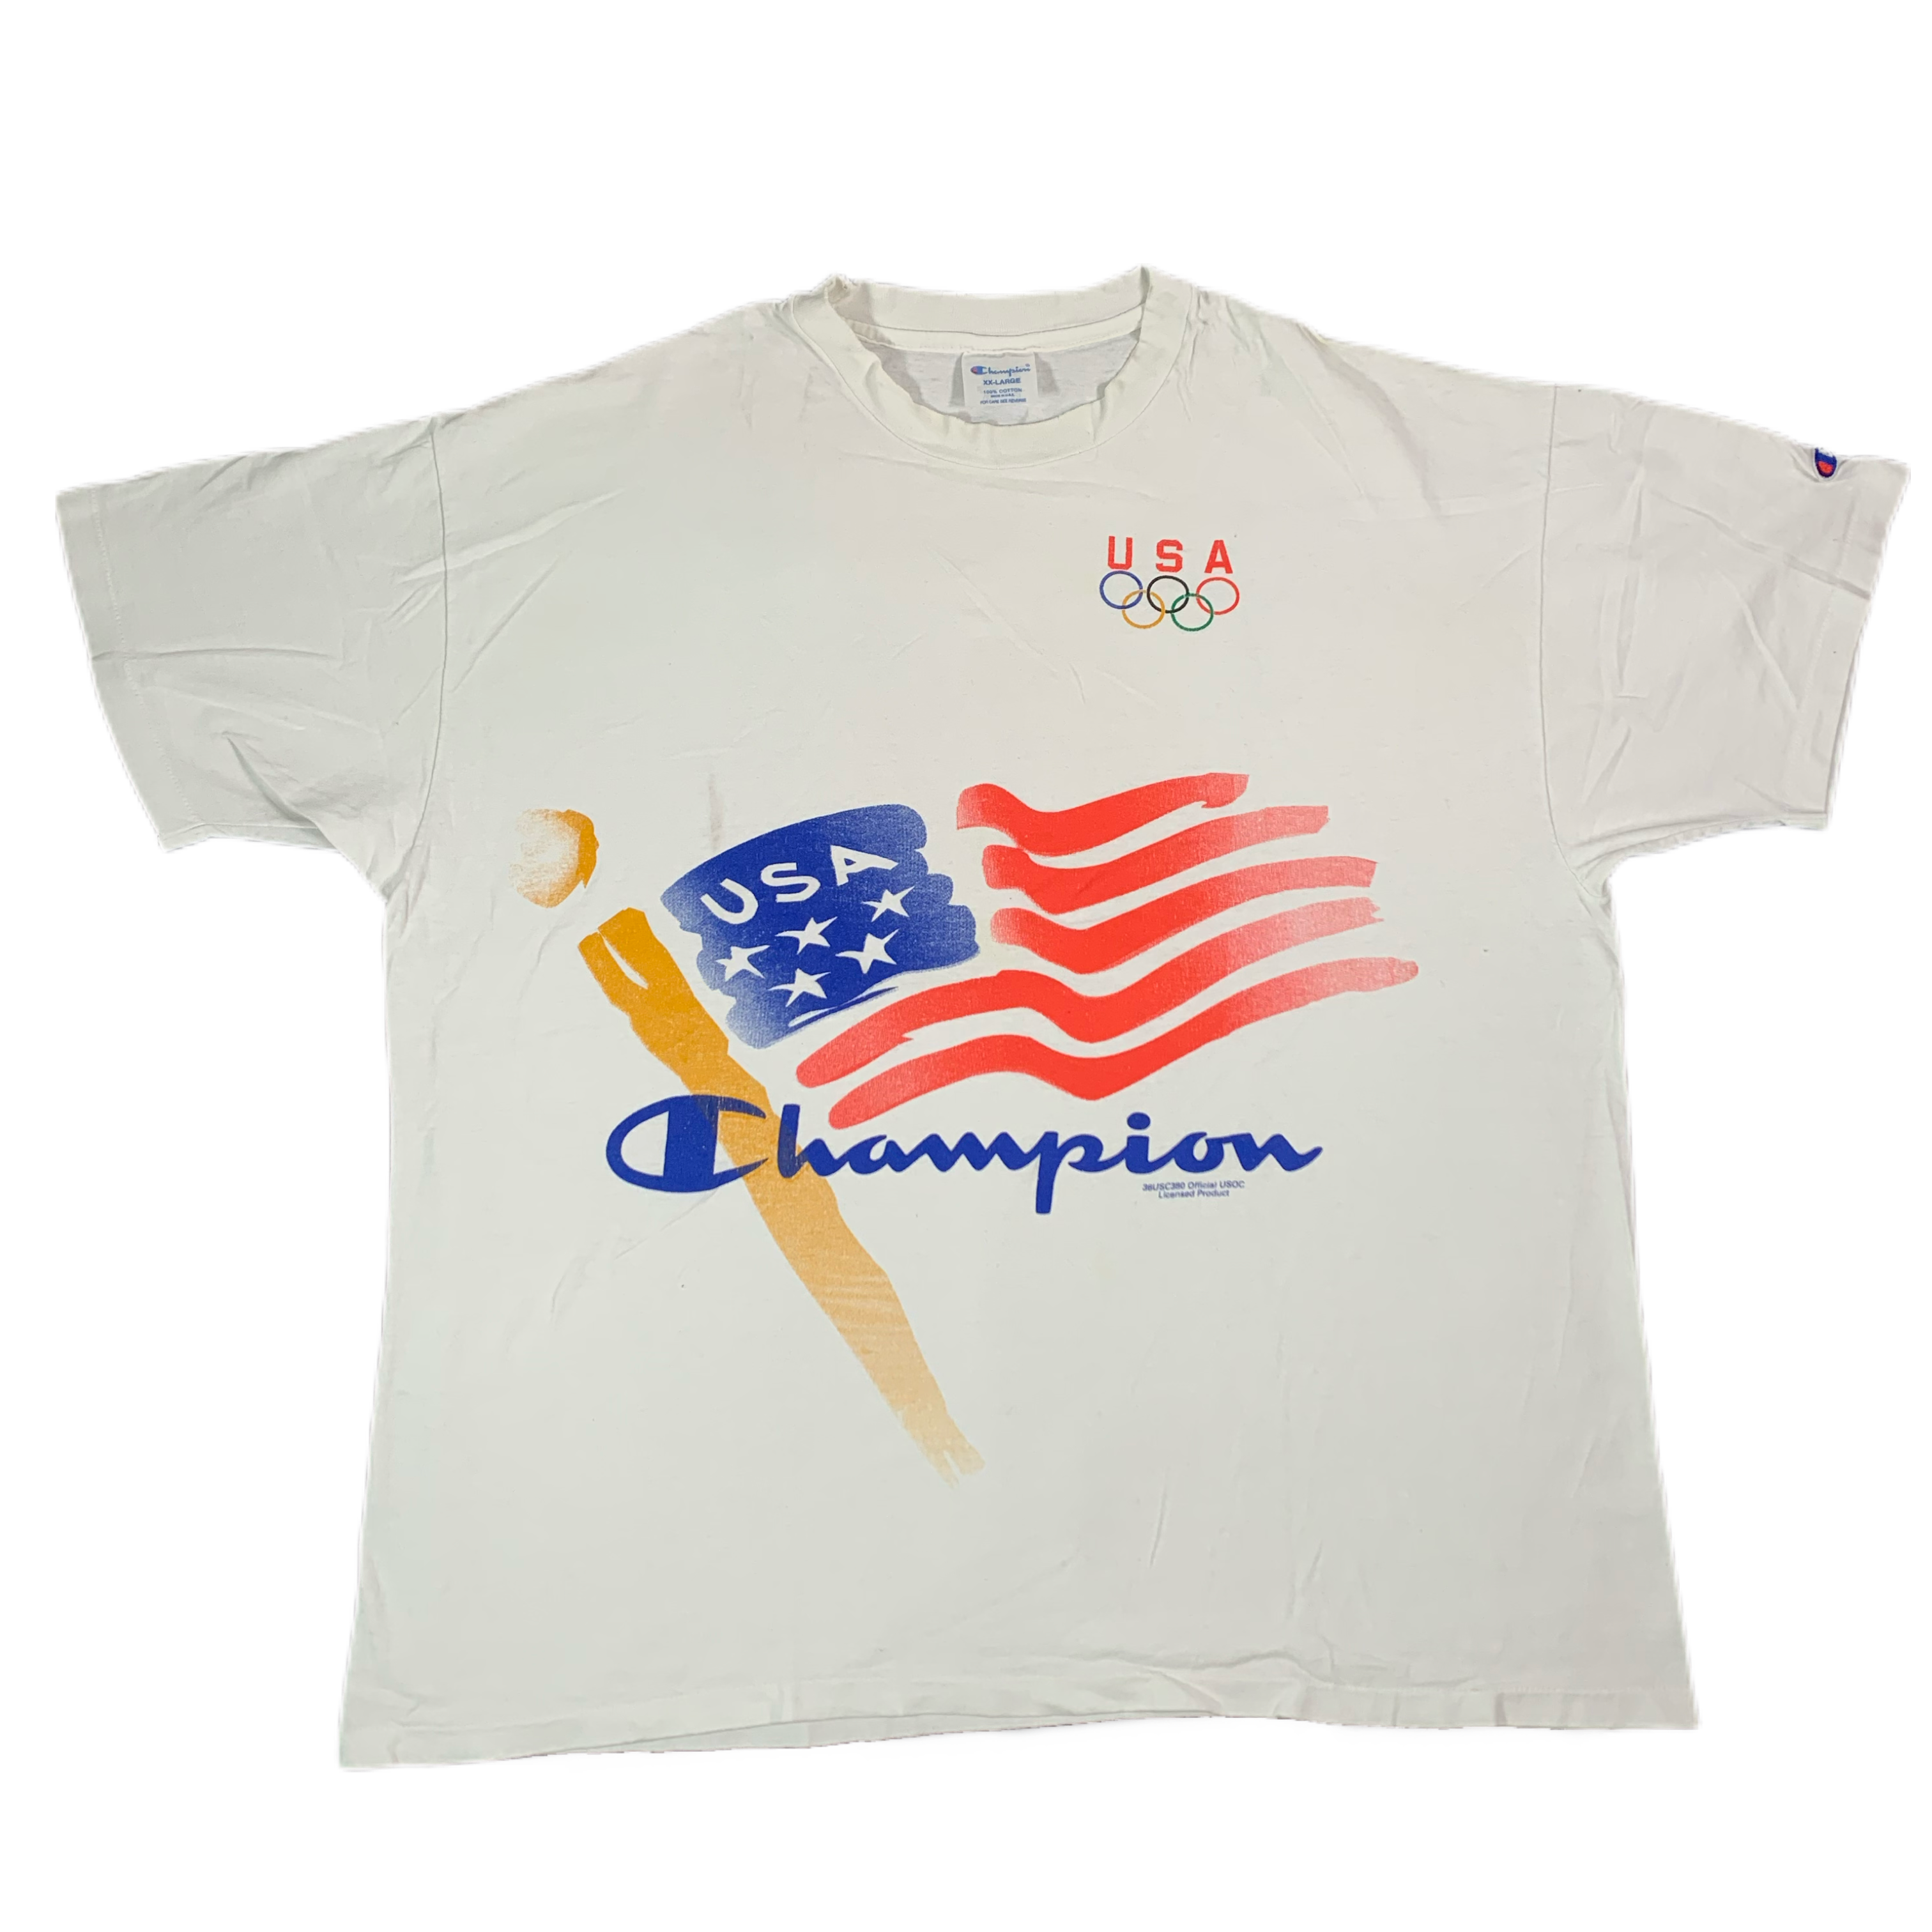 usa champion shirt